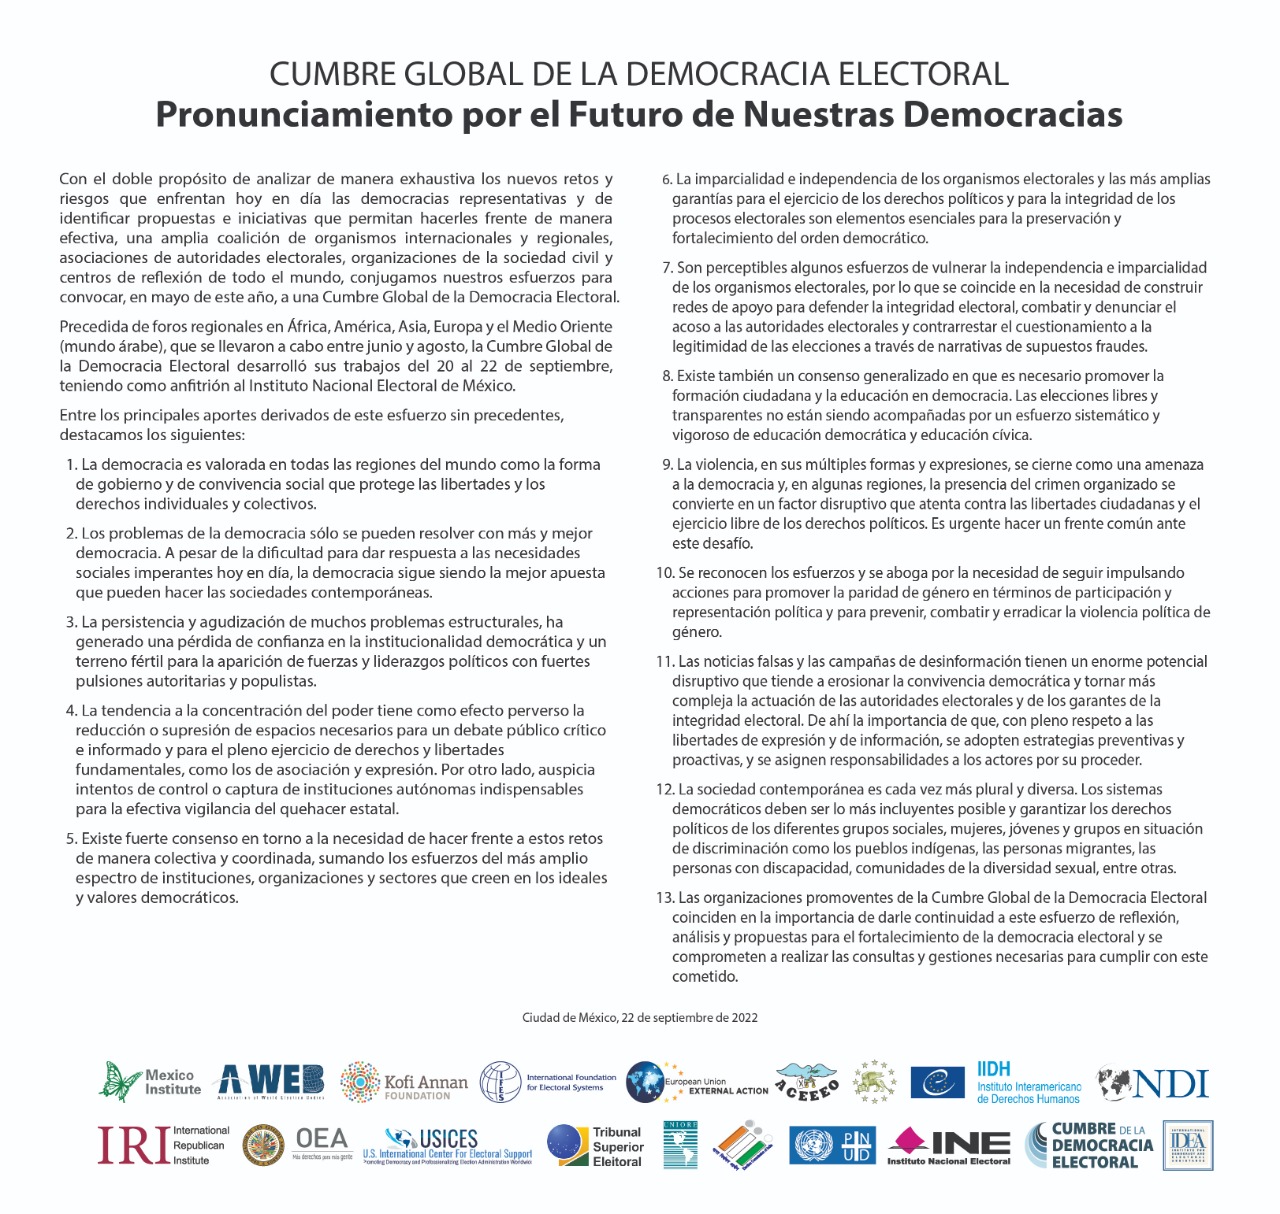 Cumbre Global de la Democracia Electoral, texto con logos de las organizaciones participantes.